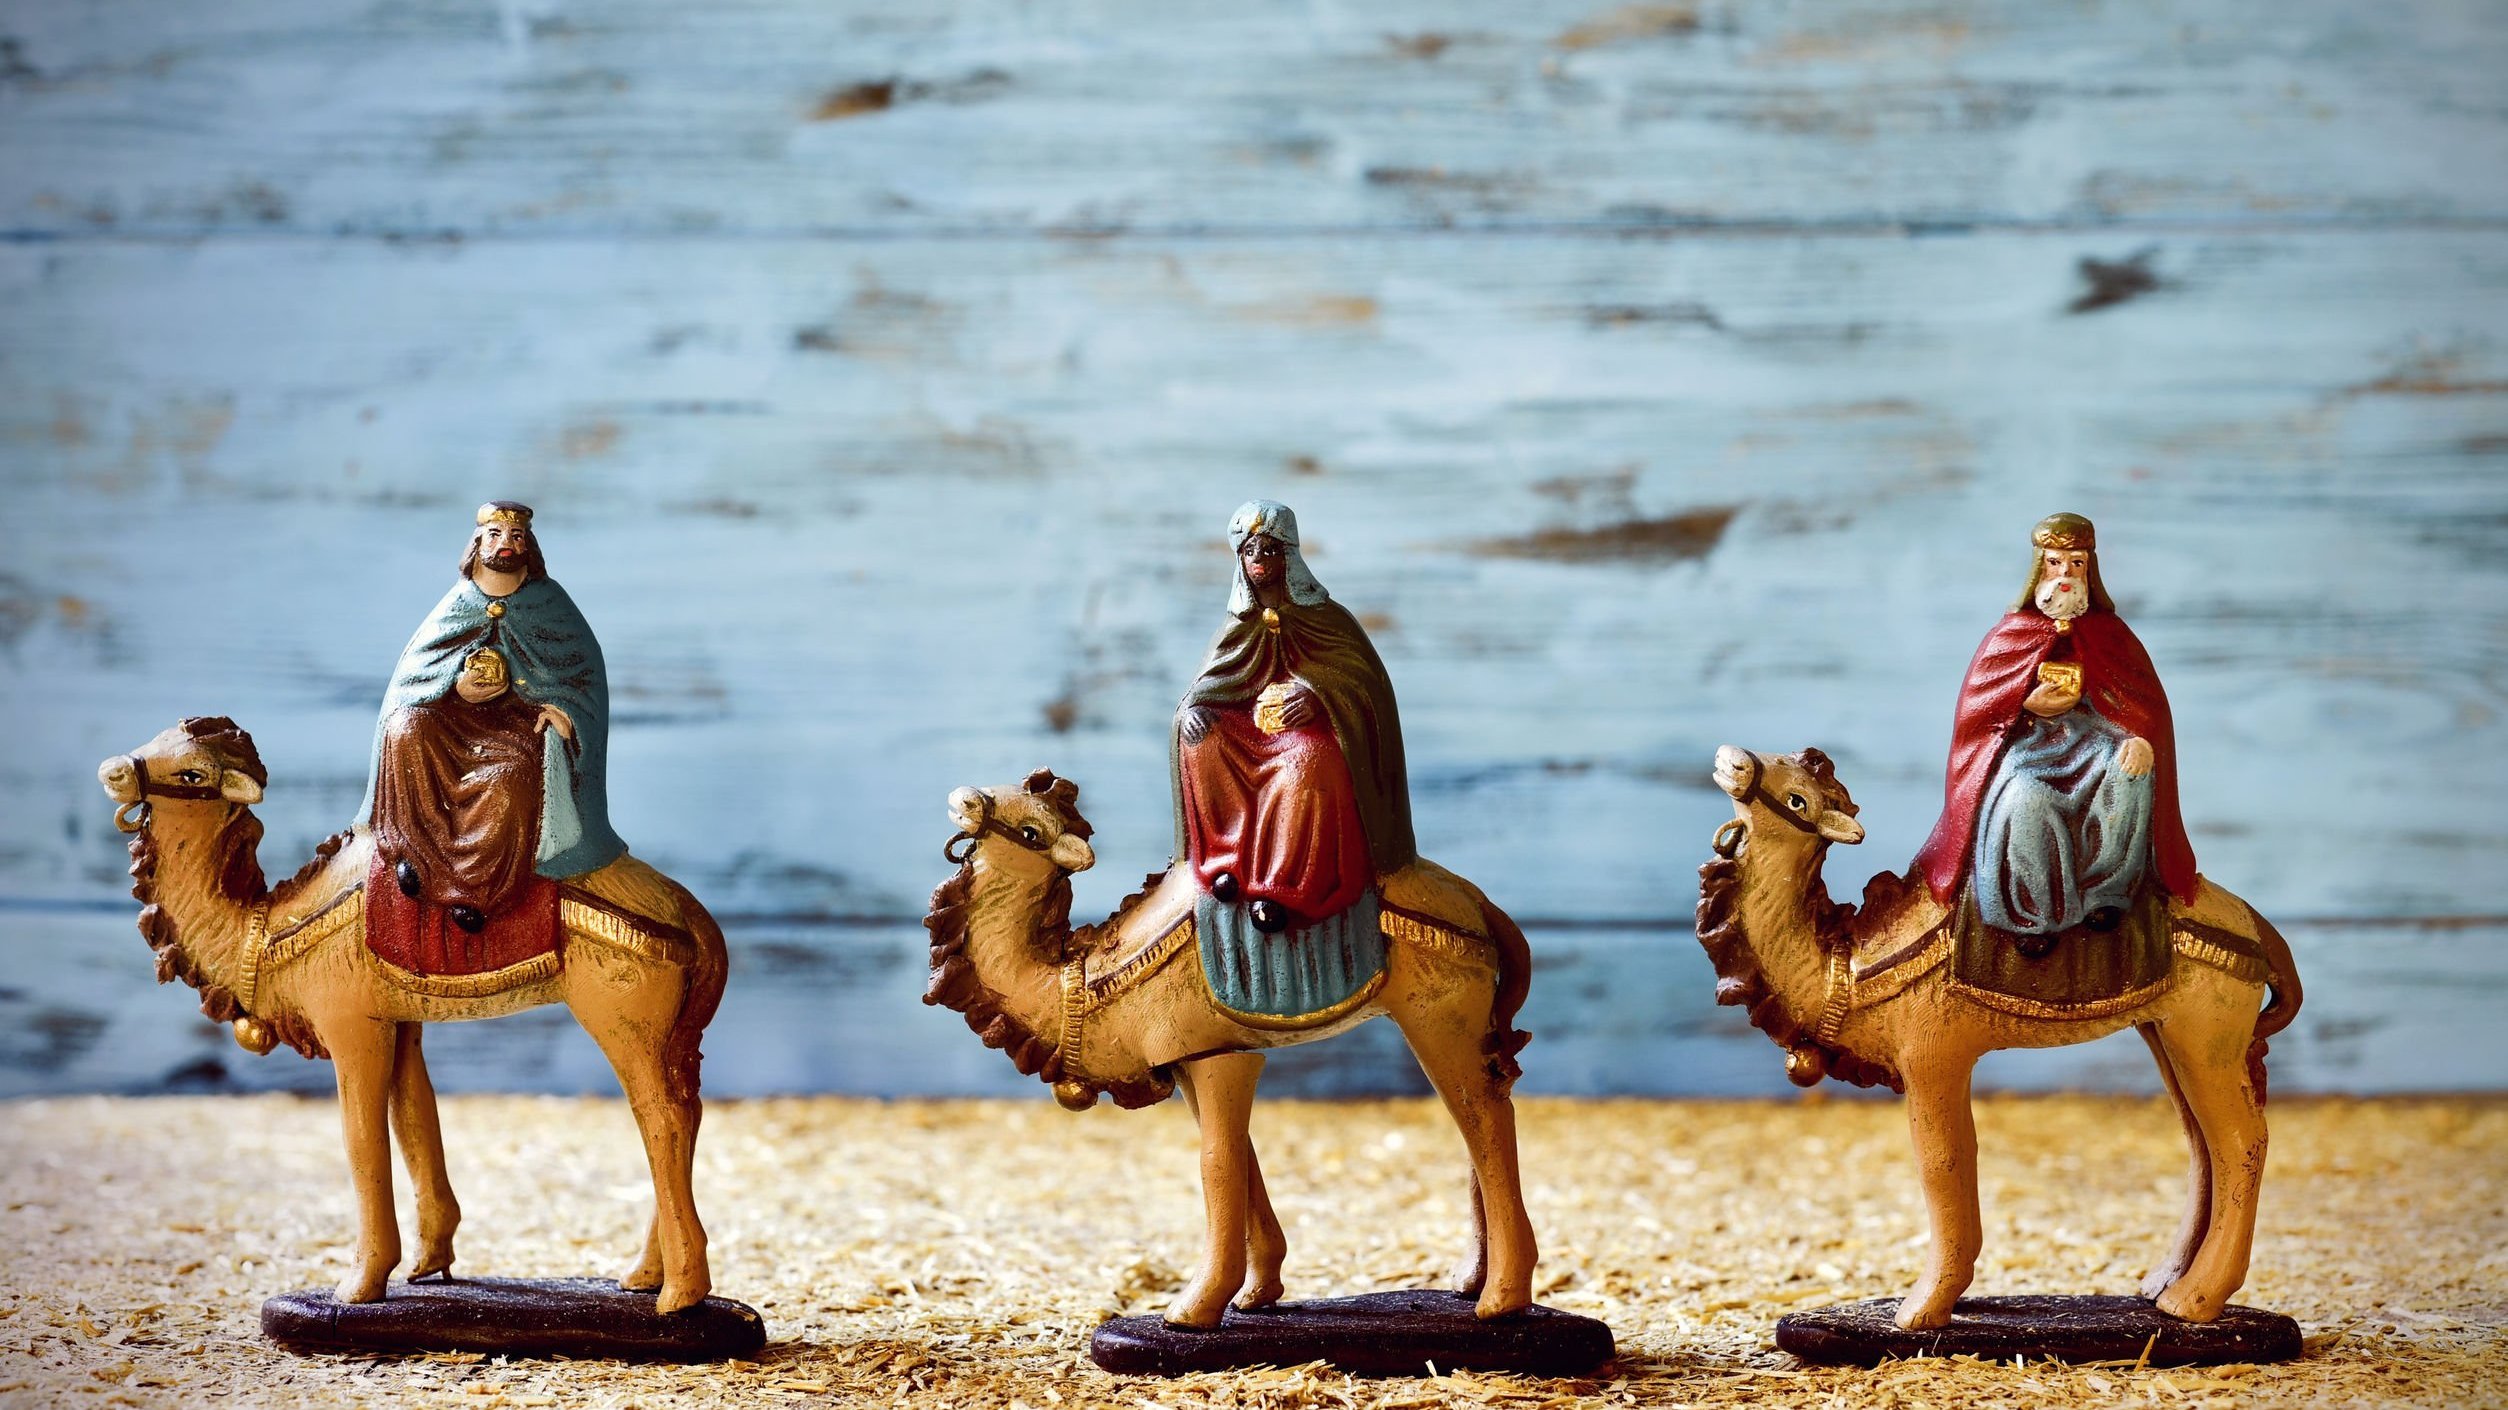 Imagens dos três Reis Magos em seus camelos